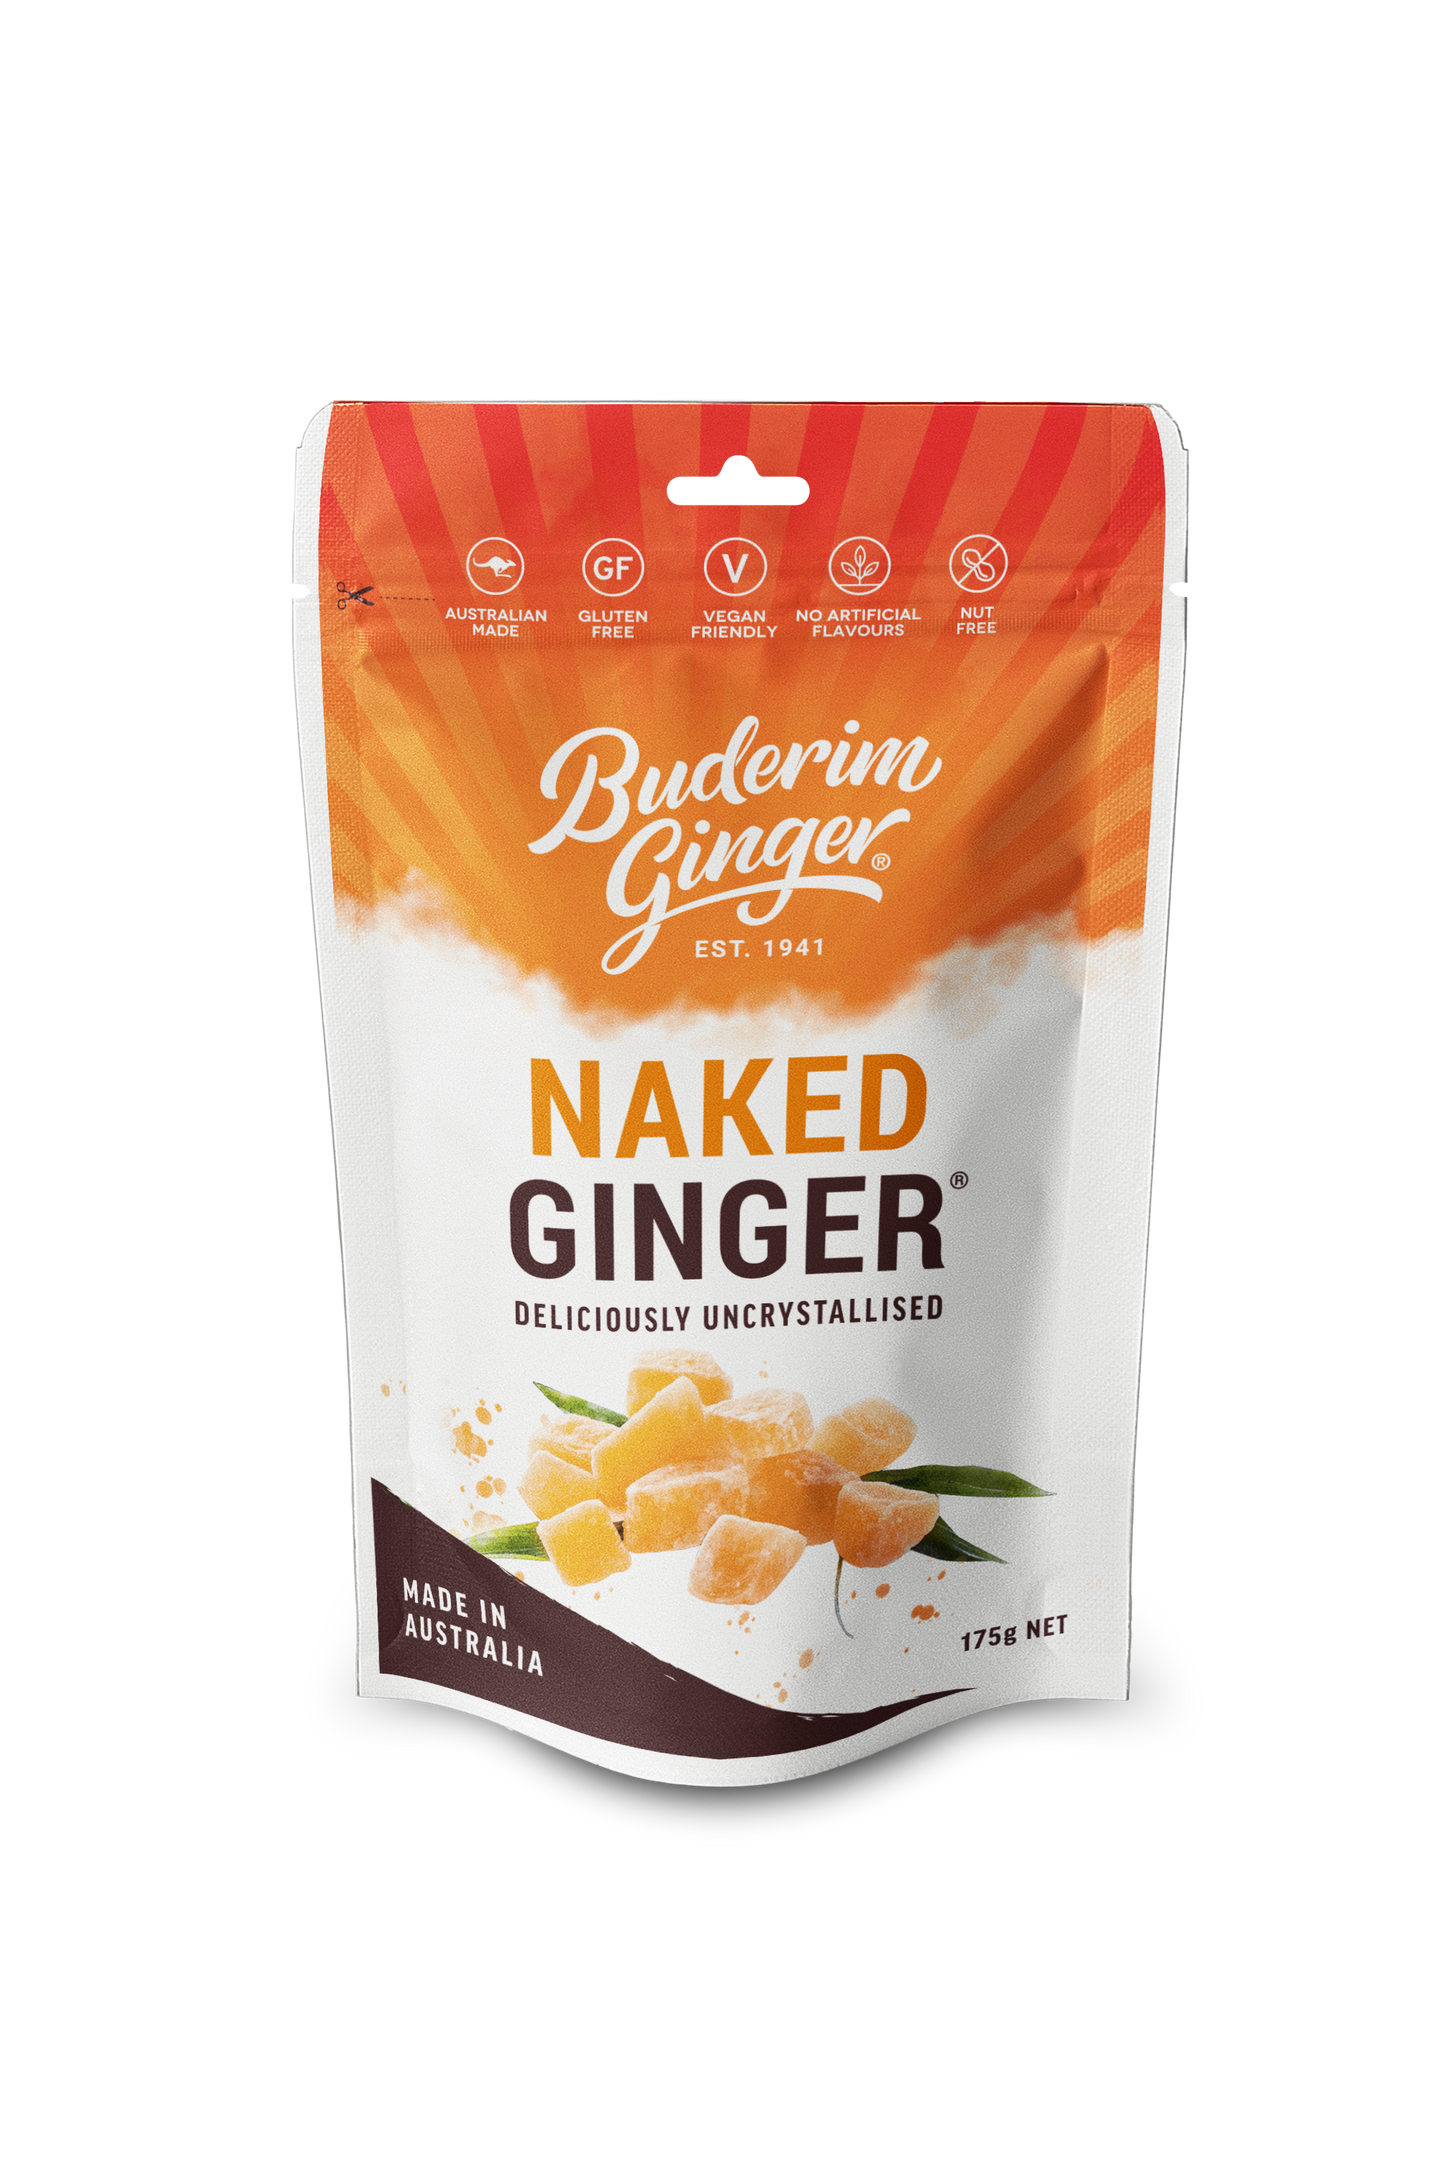 Buderim Ginger Naked Ginger 175g/1kg